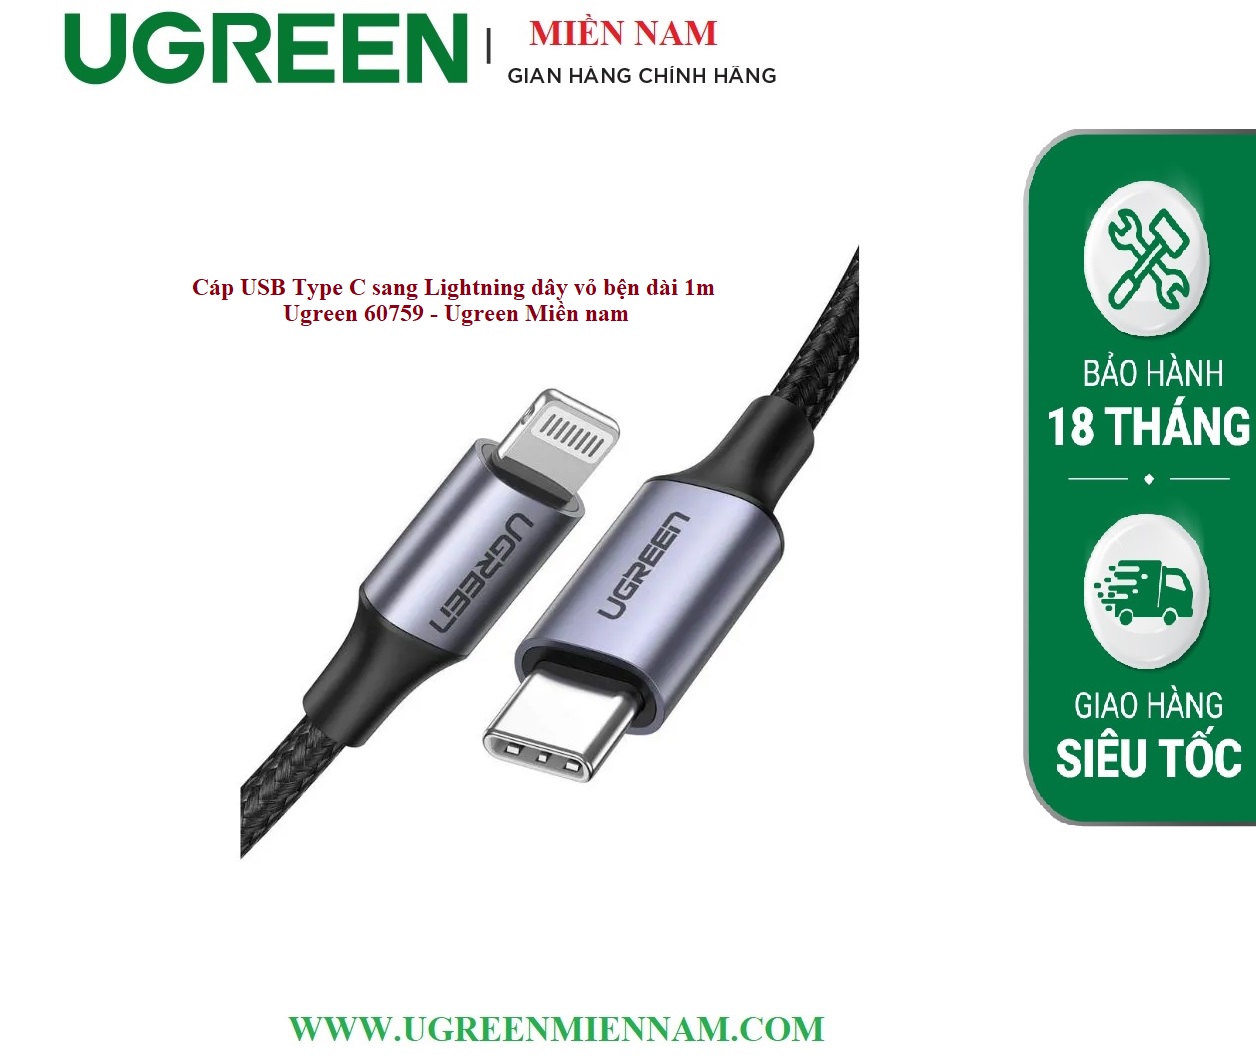 Cáp USB TypeC sang Lightning dây vỏ bện dài 1m Ugreen 60759 - Ugreen Miền nam